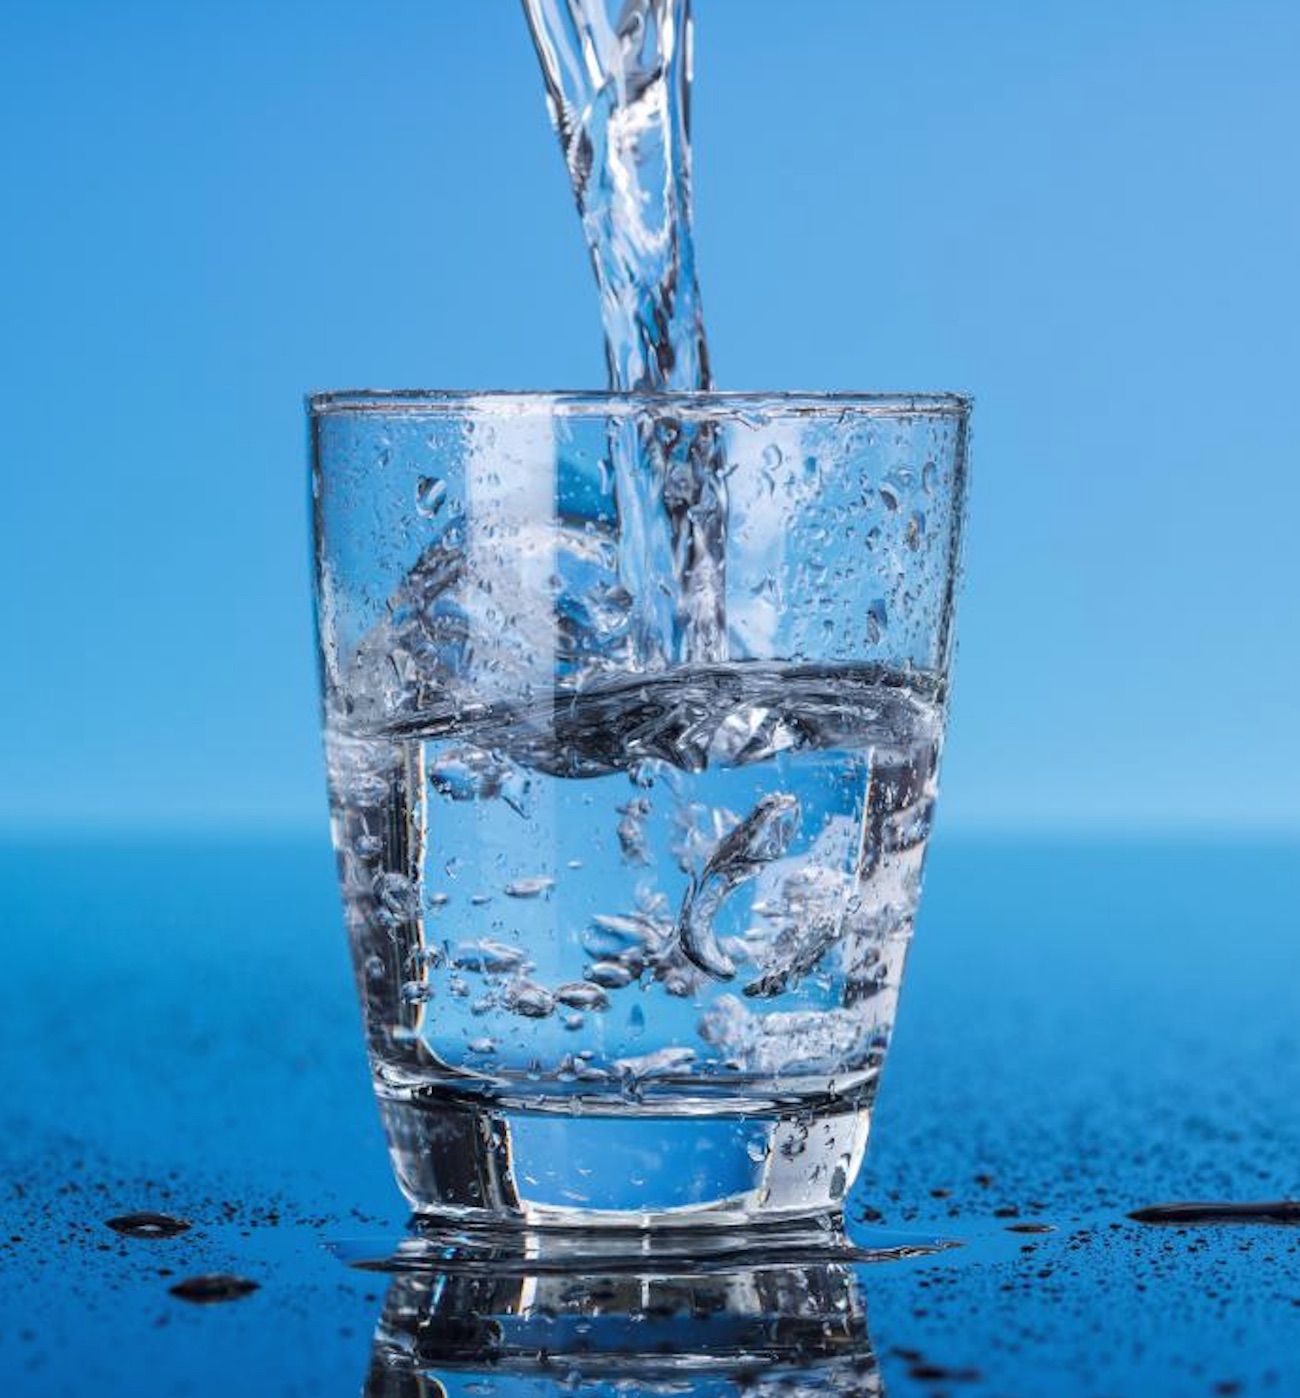 Agua sendo despejada em um copo